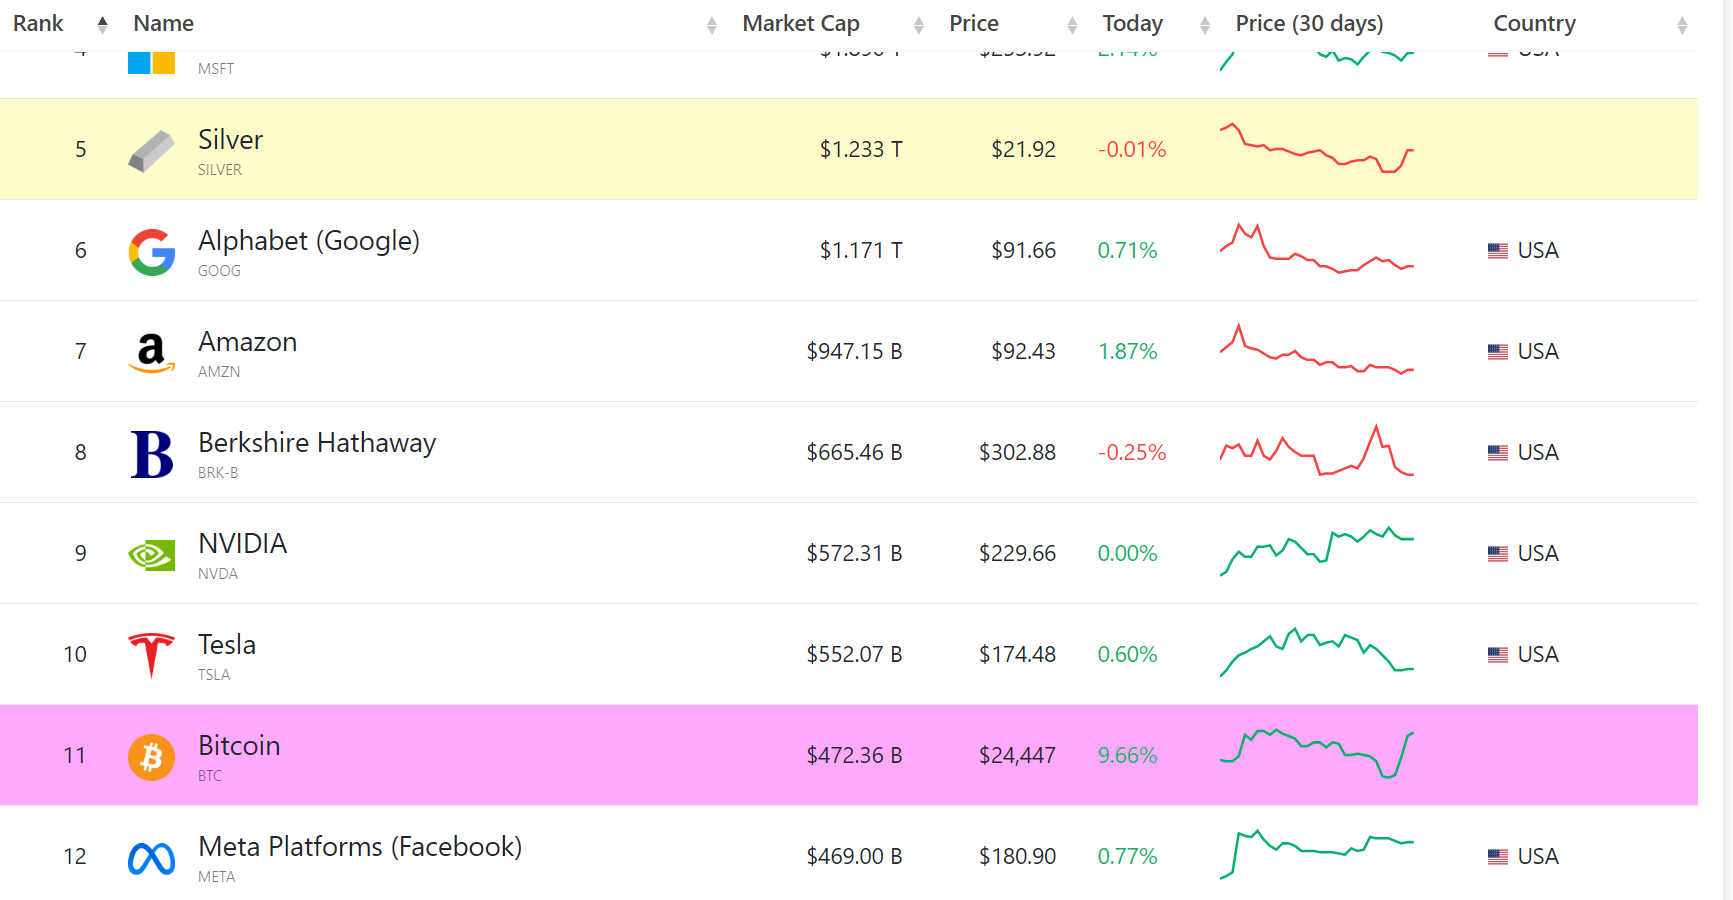 Vốn hóa thị trường của bitcoin vượt META, tiến sát top 10 tài sản